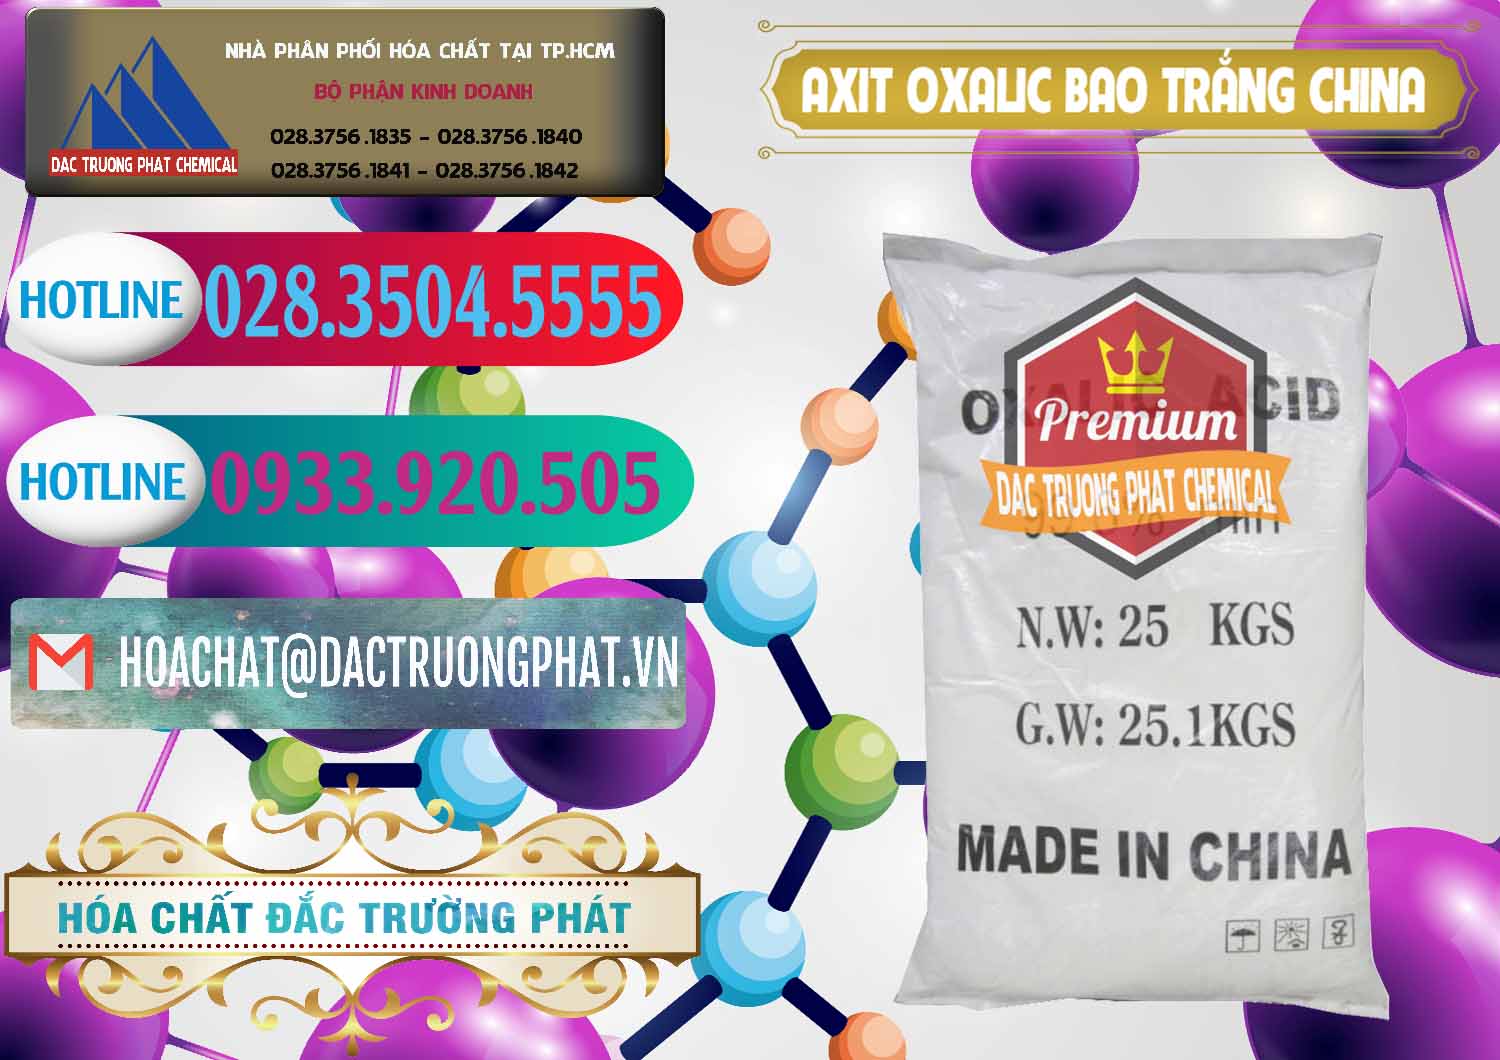 Chuyên cung cấp _ bán Acid Oxalic – Axit Oxalic 99.6% Bao Trắng Trung Quốc China - 0270 - Nơi cung cấp và nhập khẩu hóa chất tại TP.HCM - truongphat.vn